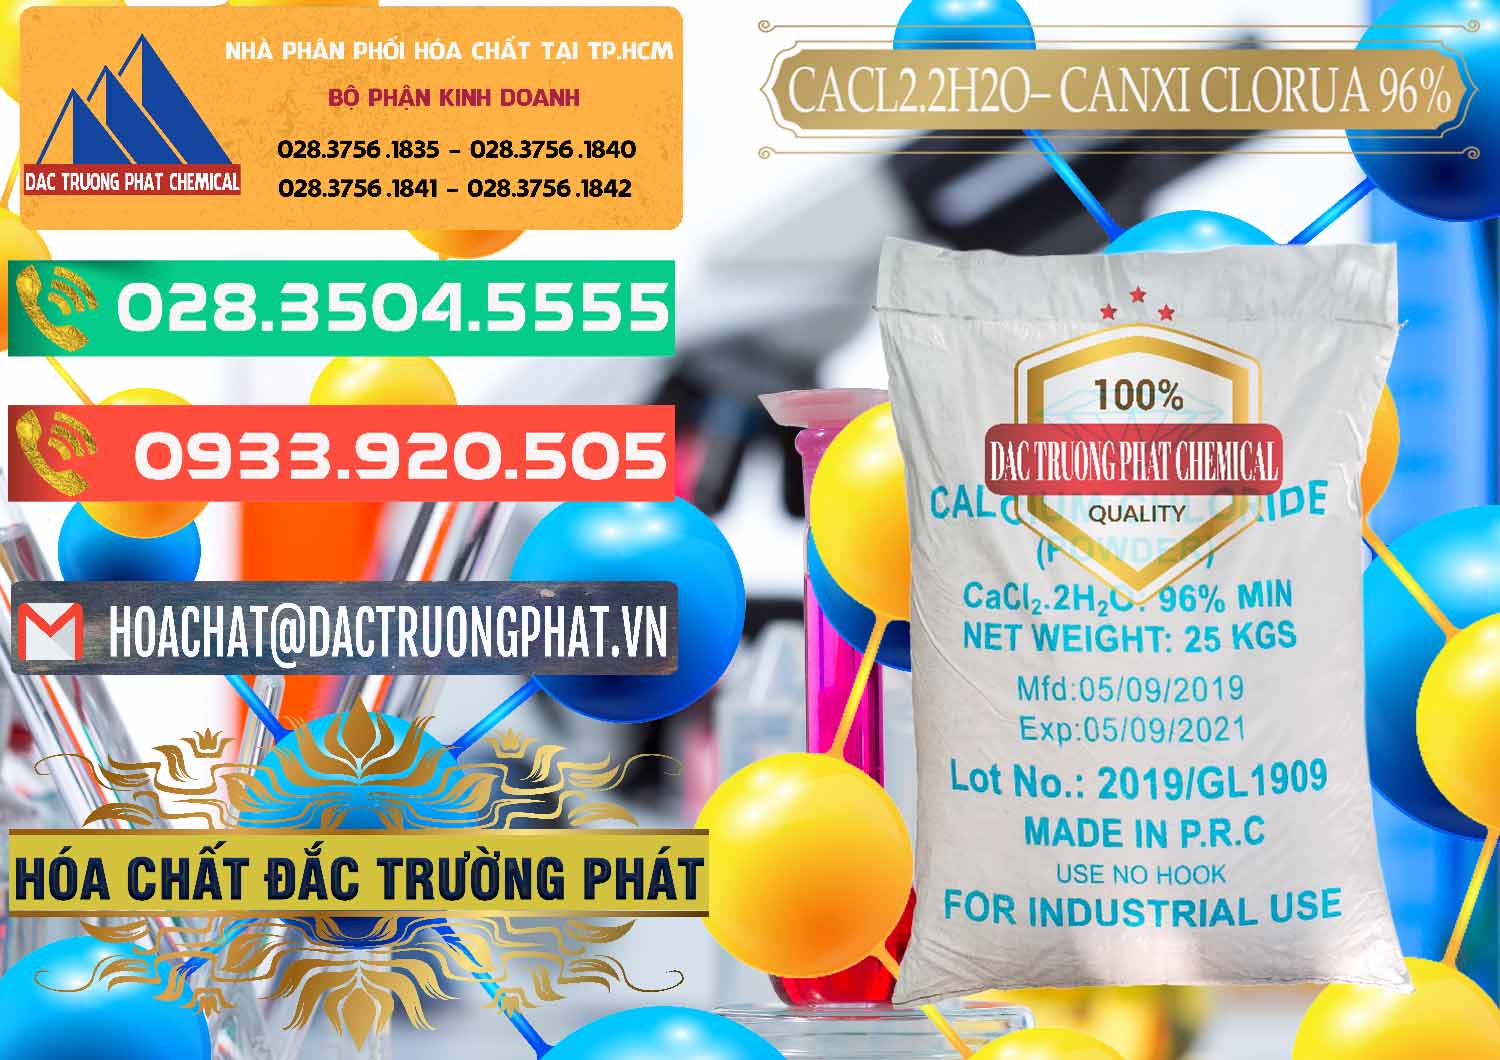 Chuyên bán _ cung ứng CaCl2 – Canxi Clorua 96% Logo Kim Cương Trung Quốc China - 0040 - Chuyên phân phối & cung ứng hóa chất tại TP.HCM - congtyhoachat.com.vn